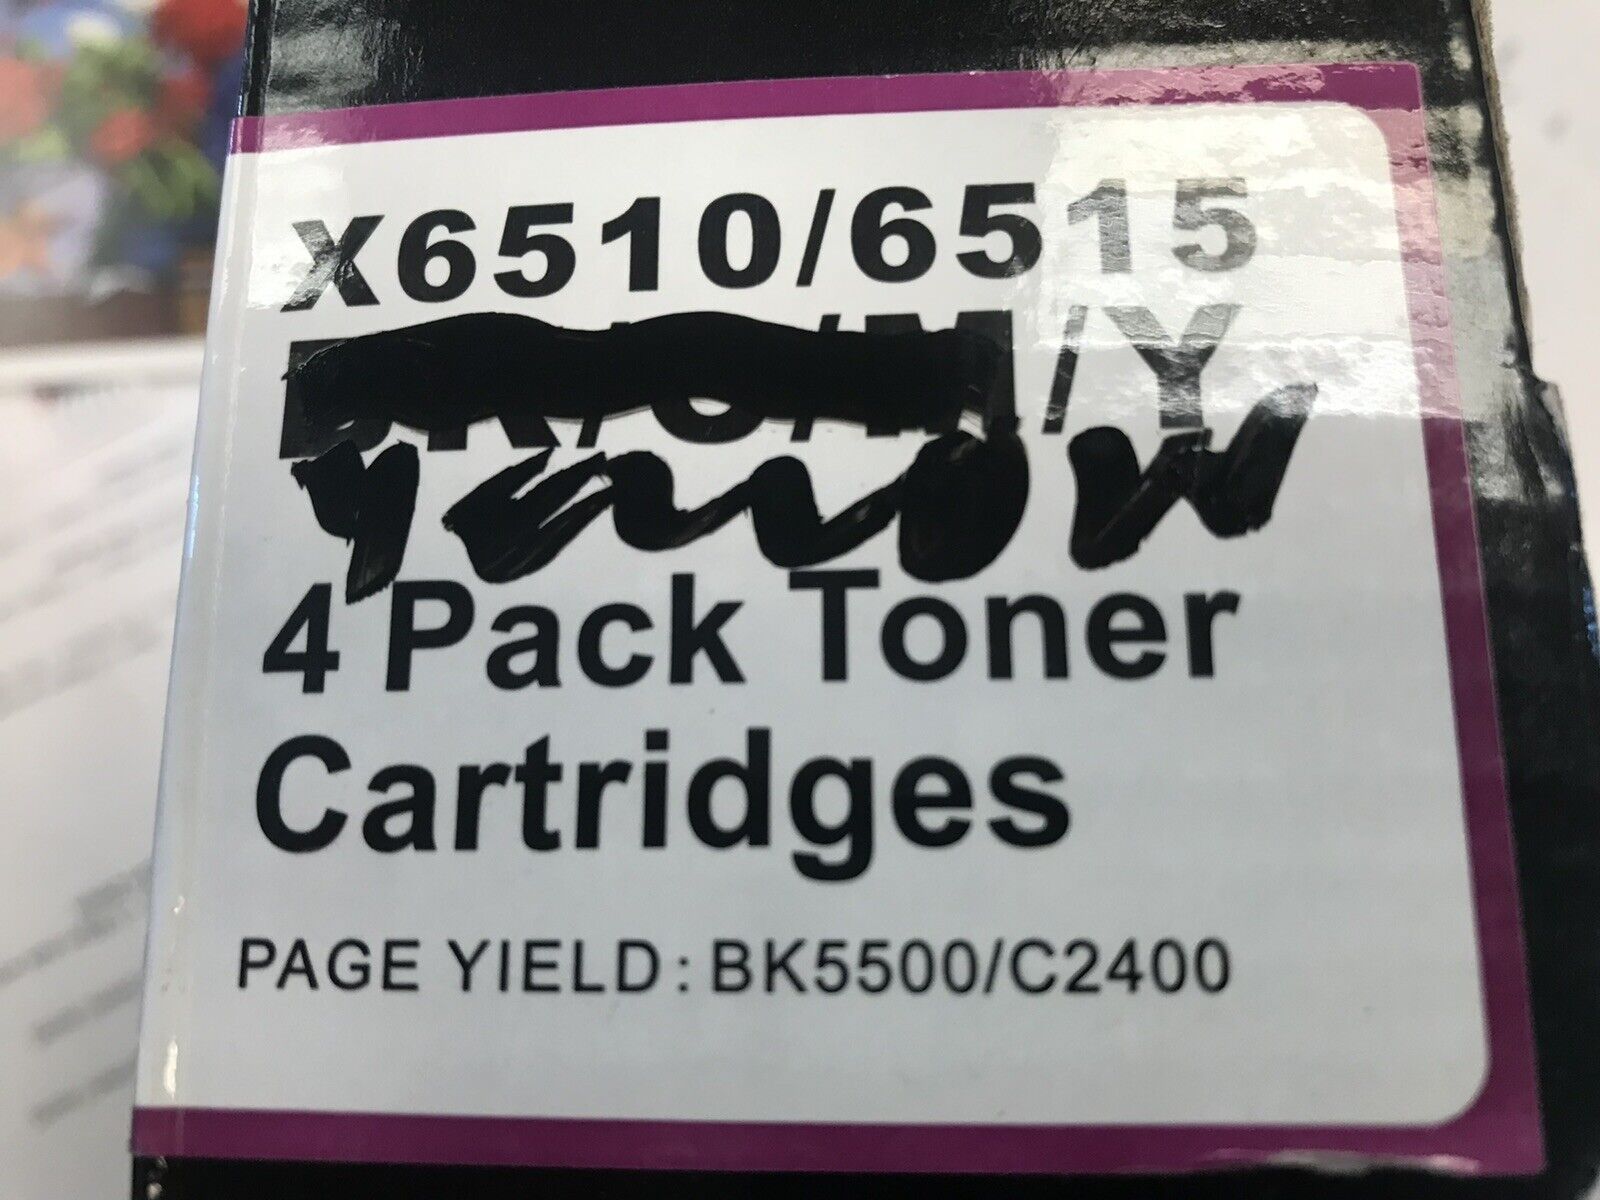 LxTek 4 Ylw toner cartridges X6510/6515